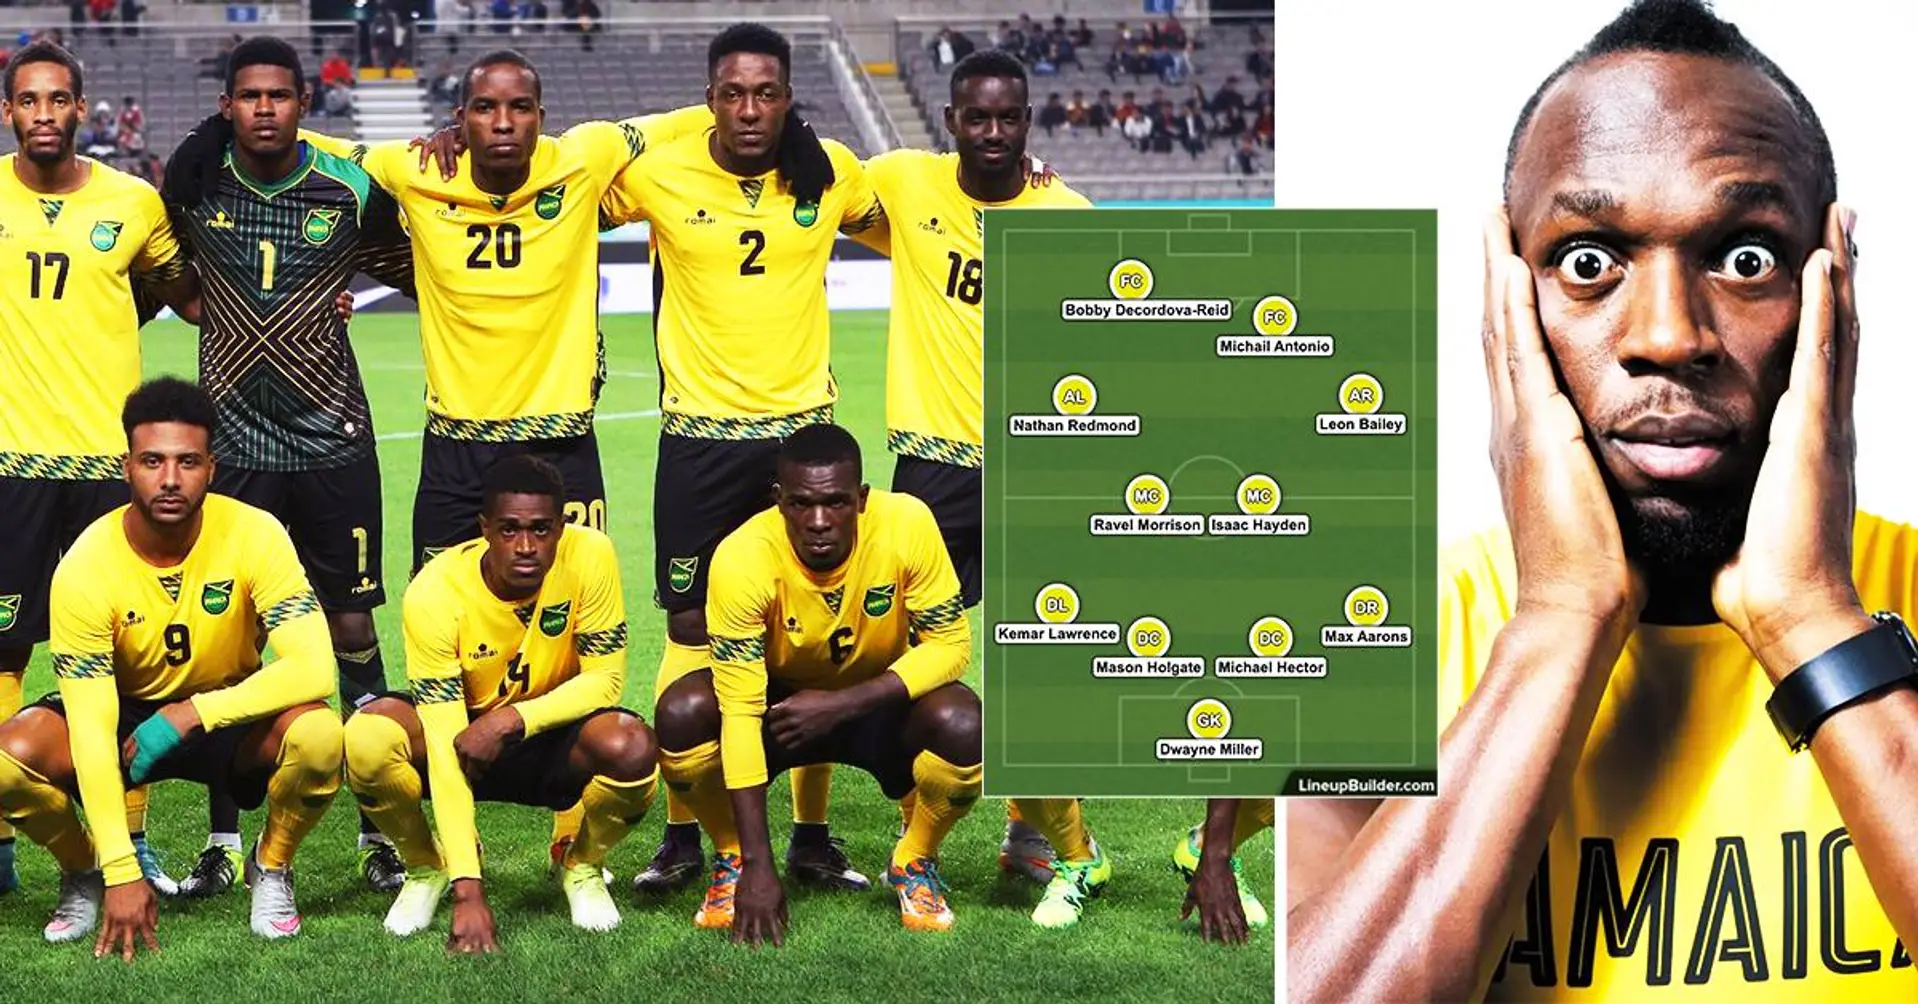 "Ils vont surprendre tout le monde à la Coupe du monde": Le onze de départ potentiel de la Jamaïque excite les fans de football